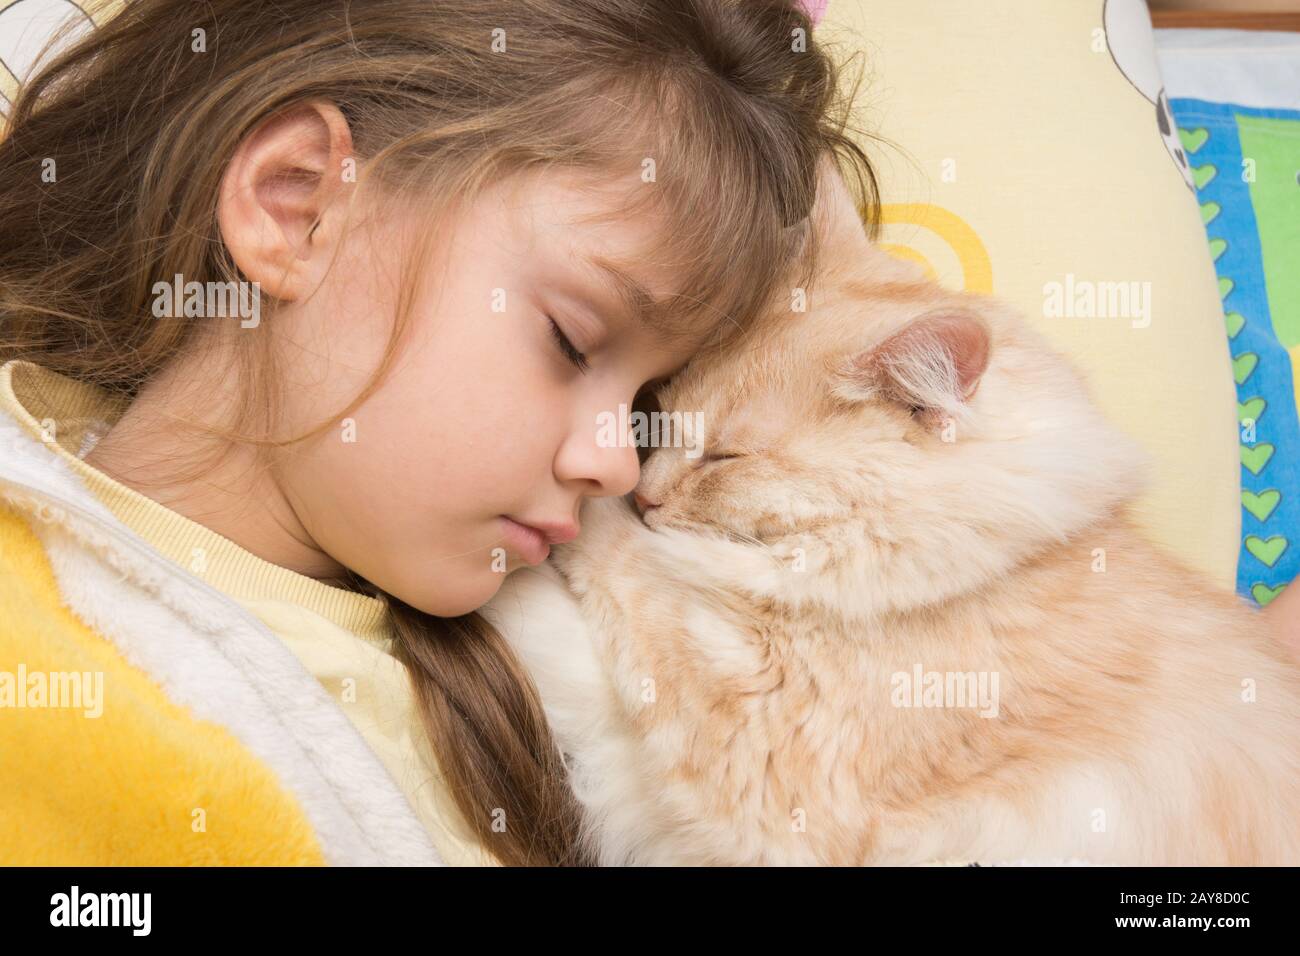 Une fille et un chat dormir doucement dans le lit, enfouissant les uns les autres Banque D'Images